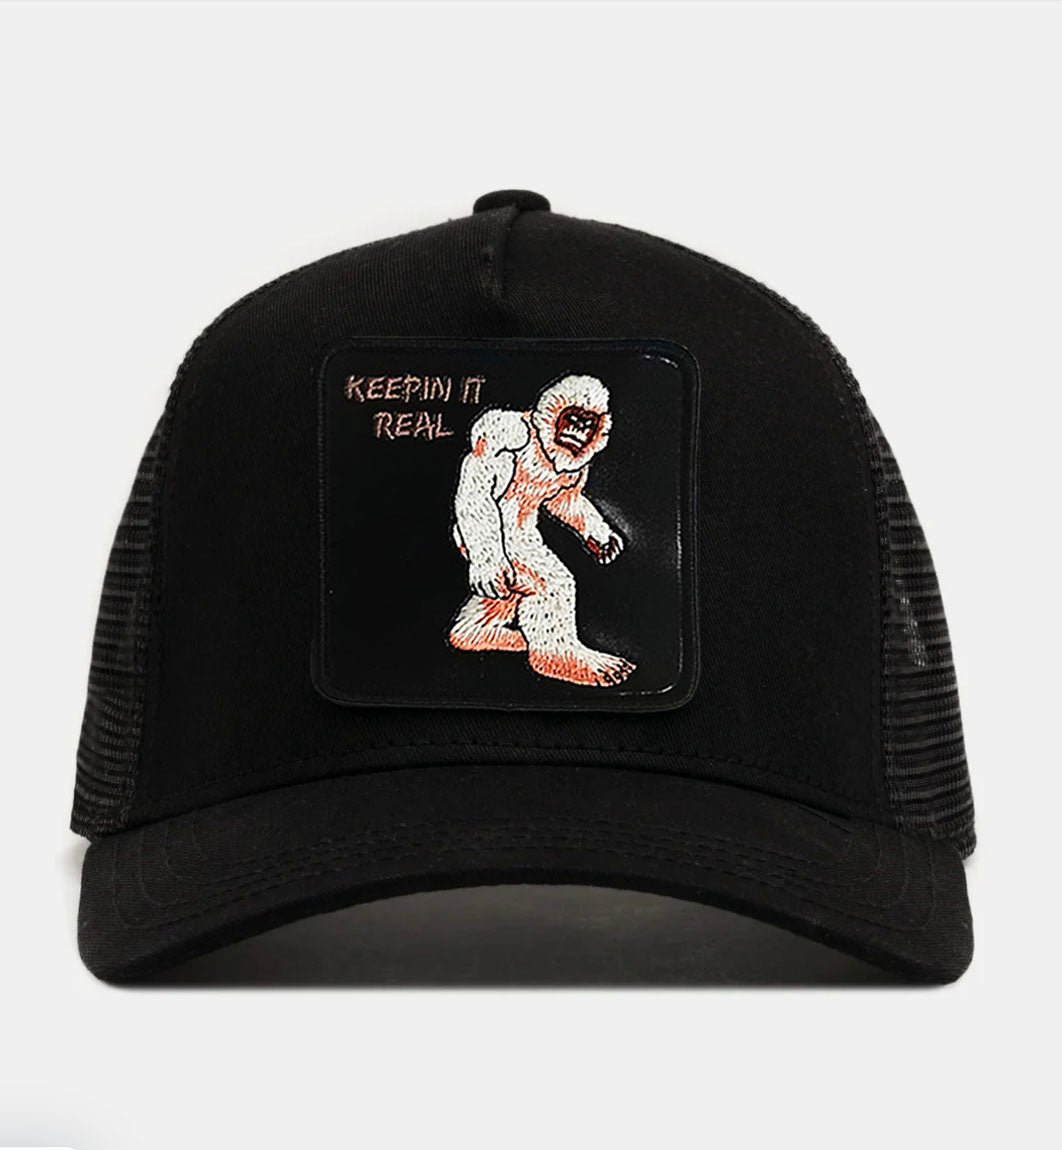 Bigfoot - "Keepin It Real" Trucker Hat